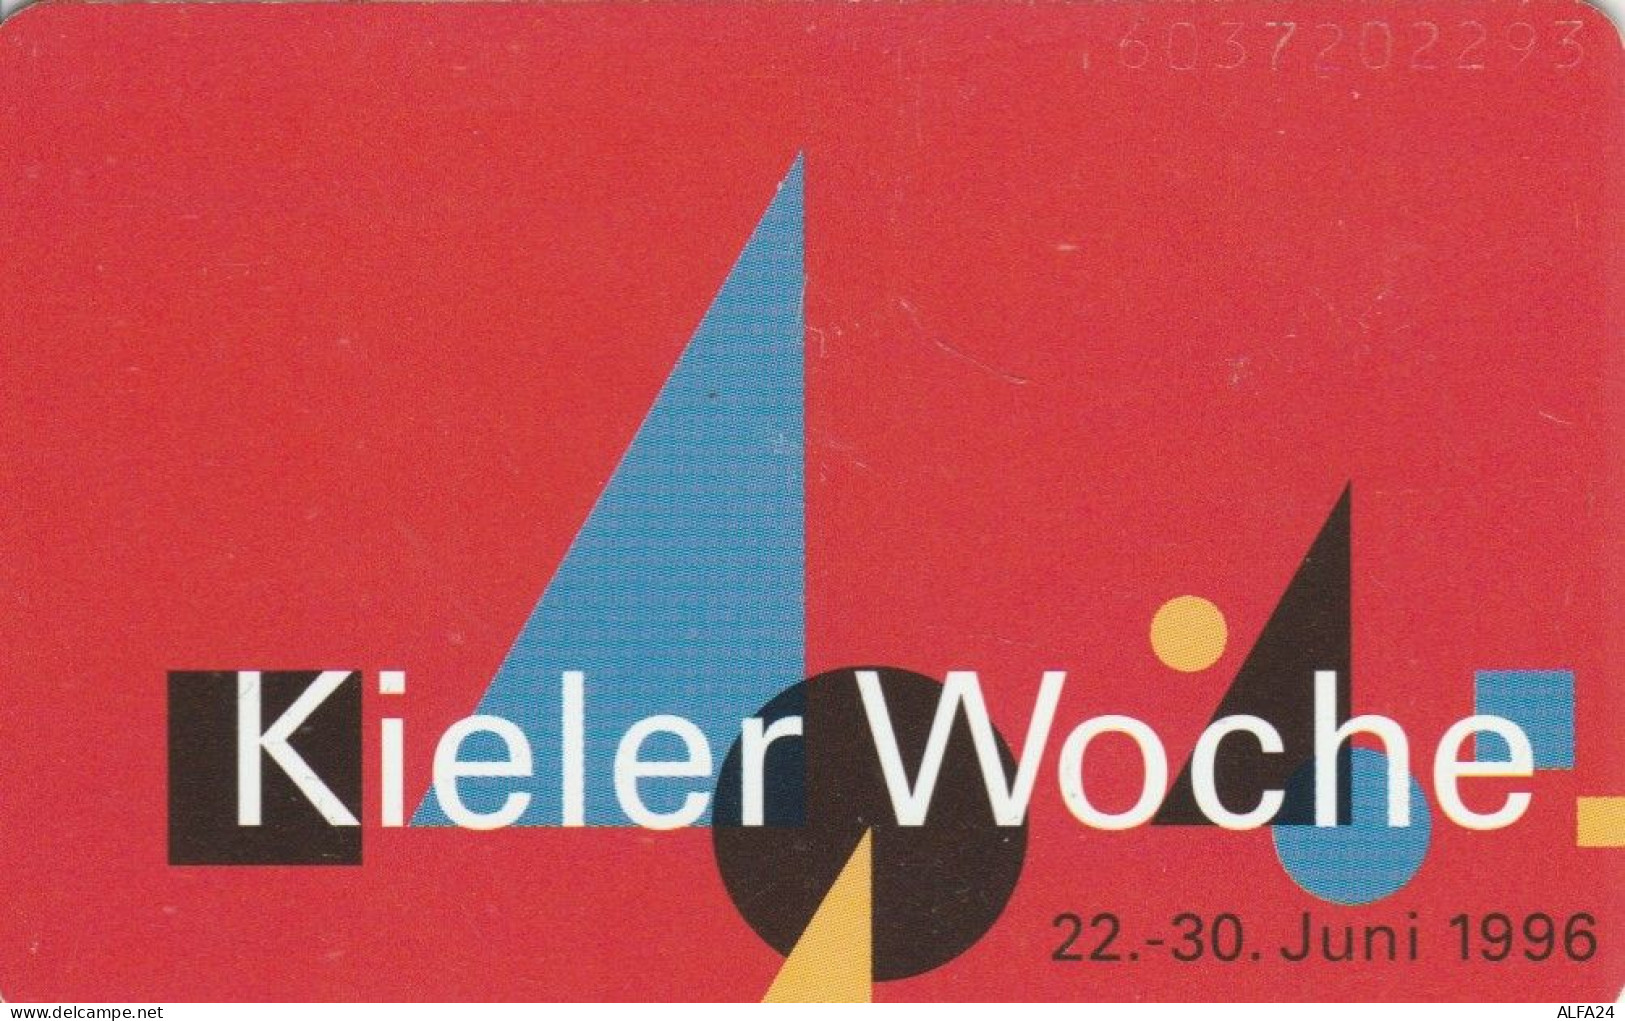 PHONE CARD GERMANIA SERIE P (CK6335 - P & PD-Series: Schalterkarten Der Dt. Telekom